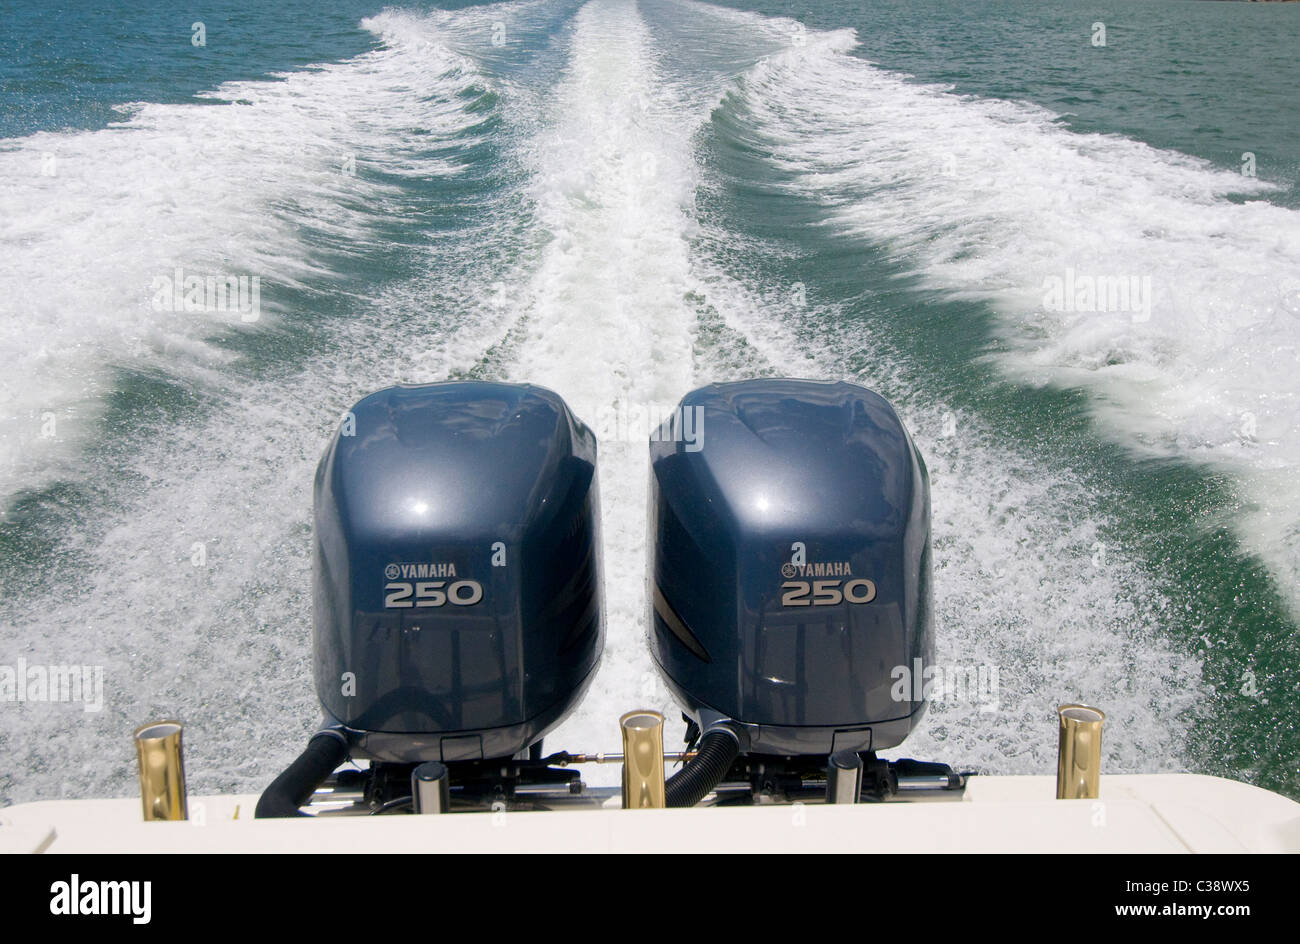 Bateau en mouvement rapide avec deux moteurs hors-bord Yamaha de 250 chevaux sur la voie navigable côtière entre la Floride Banque D'Images